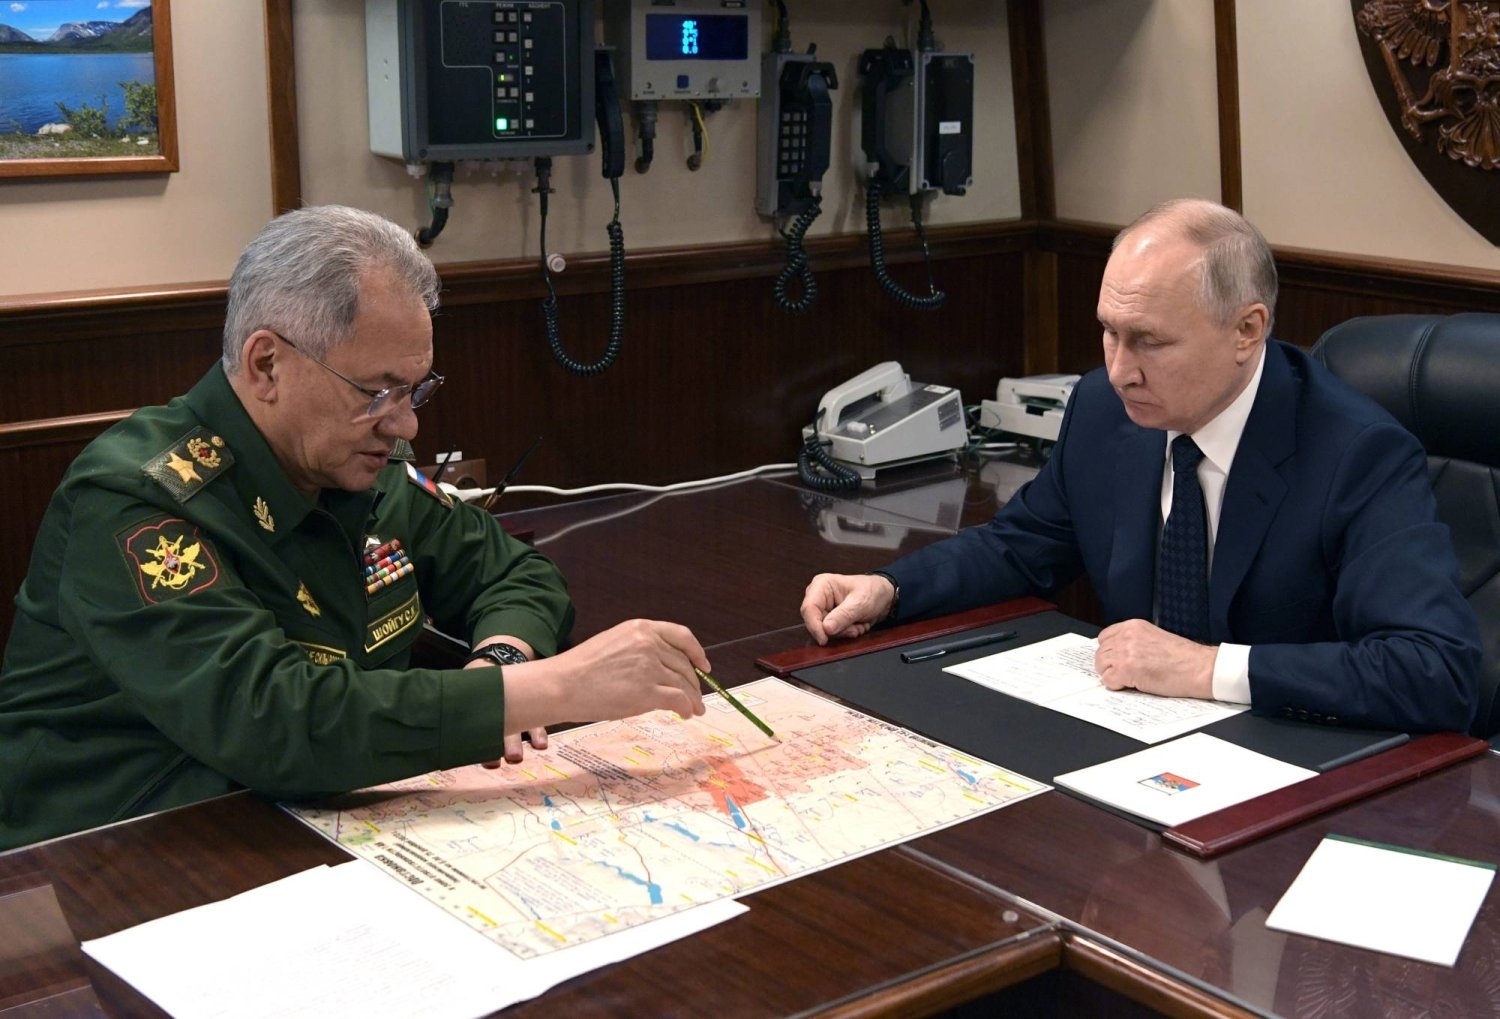 بوتين يطرح الحوار بعد «أفدييفكا»